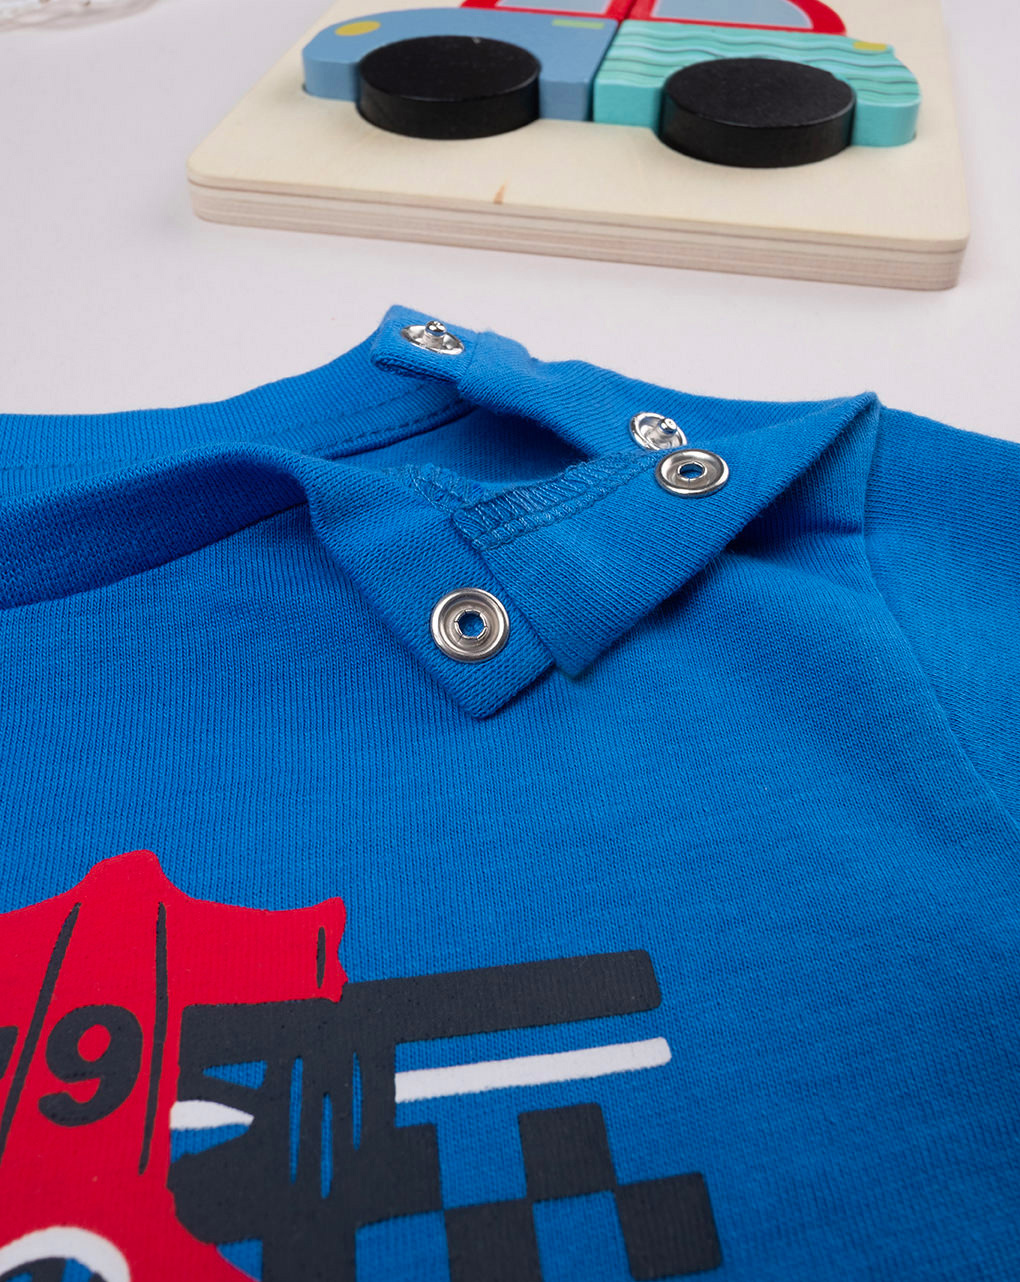 βρεφικό t-shirt μπλε formula 1 για αγόρι - Prénatal